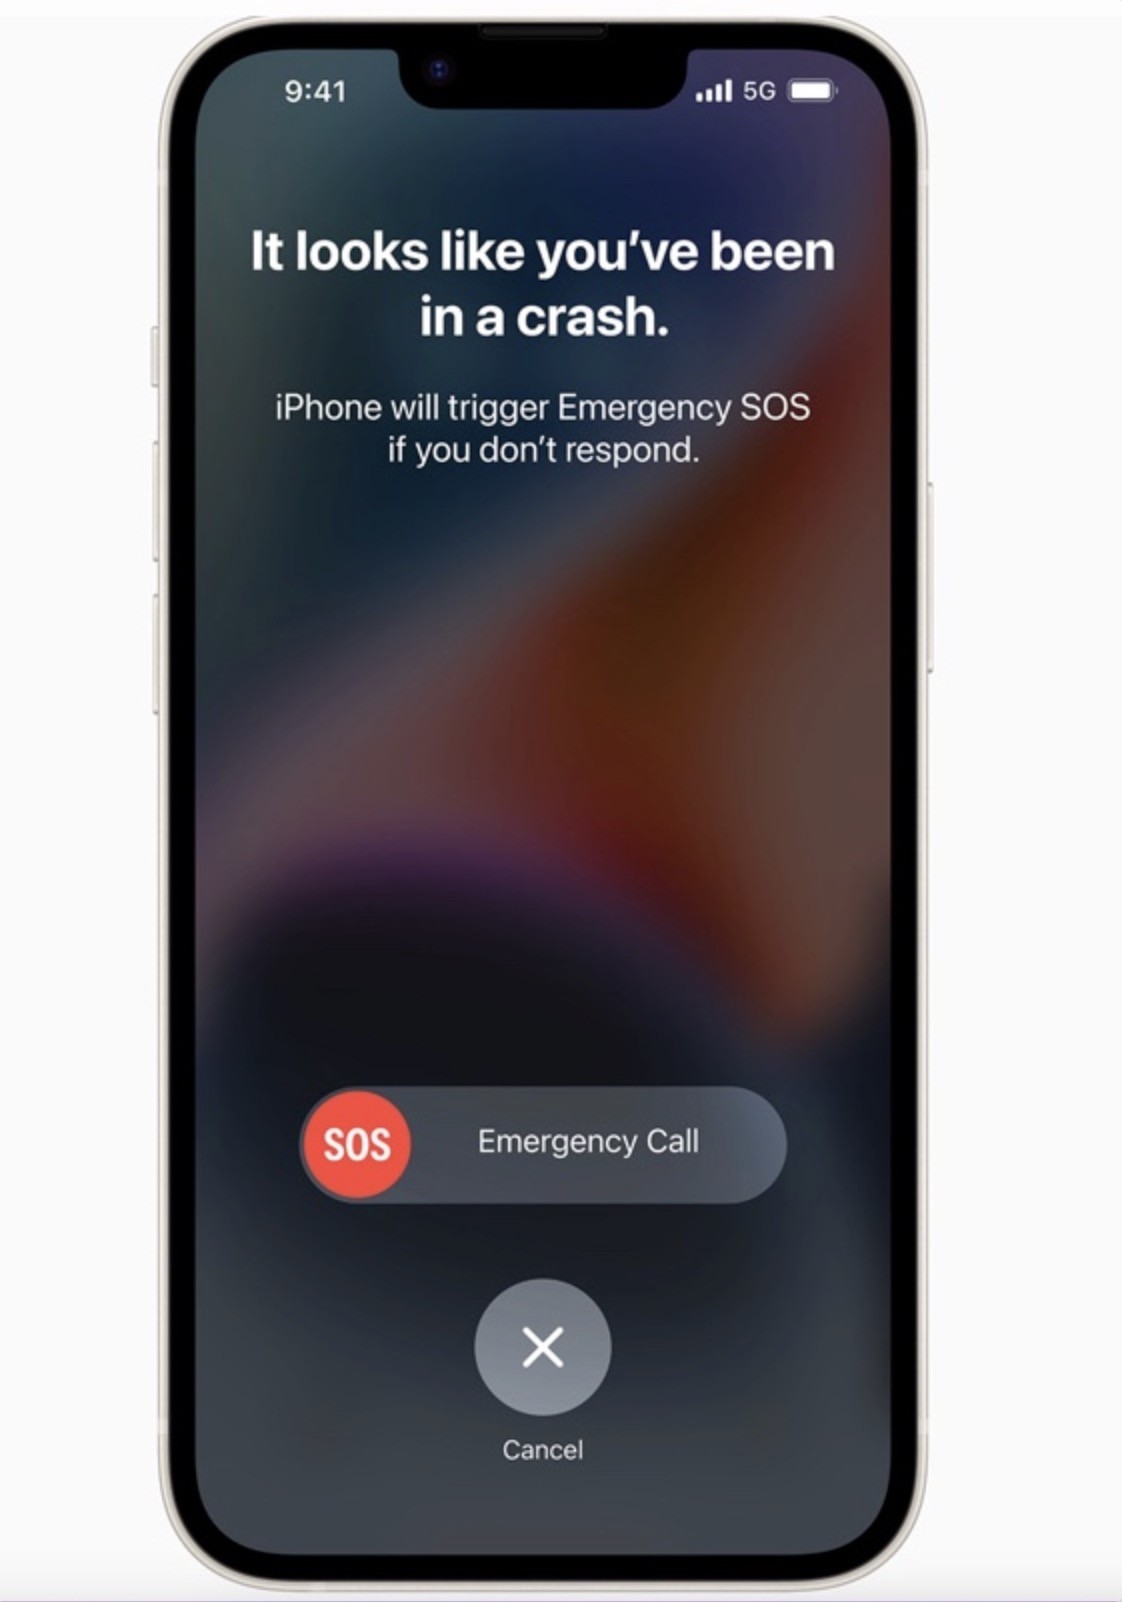 Jak działa "wykrywanie wypadku" i "alarmowe sos przez satelitę" w iPhone 14 ciekawostki wykrywanie wypadku w iphone 14, wykrywanie wypadku, jak dziala wykrywanie wypadku w iphone, jak dziala alarmowe sos przez satelitę w iphone, alarmowe sos przez satelitę w iphone, alarmowe sos przez satelitę, Accident Detection  W serii iPhone 14 znalazły się dwie funkcje związane z bezpieczeństwem: "Wykrywanie wypadku" oraz "Alarmowe SOS przez satelitę". Jak działają? wykrywanie